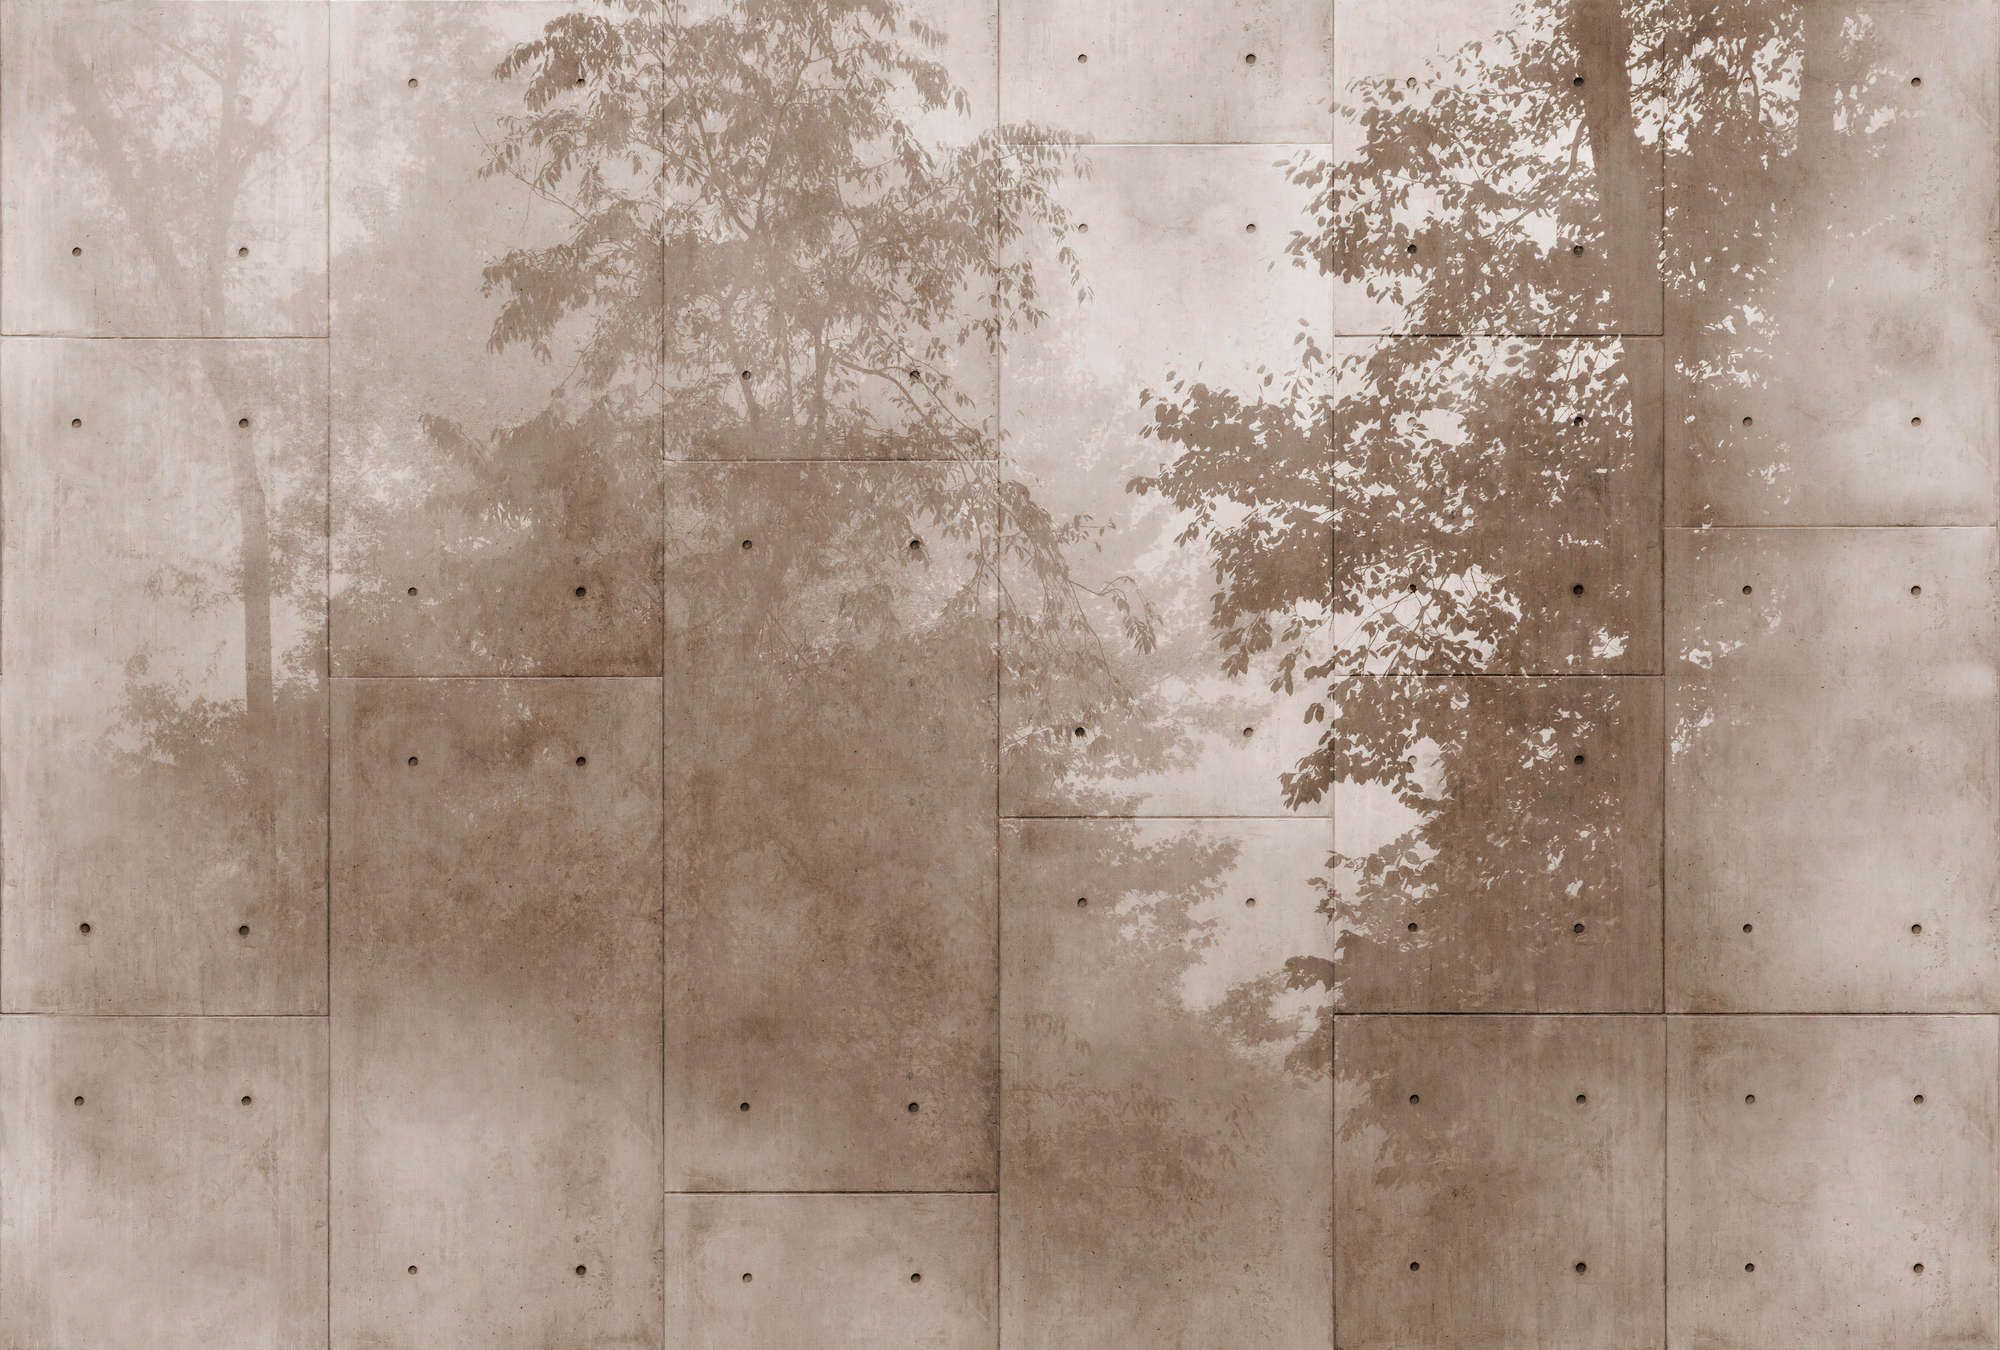             Fotomurali »mytho« - cime di alberi su lastre di cemento - tessuto non tessuto opaco e liscio
        